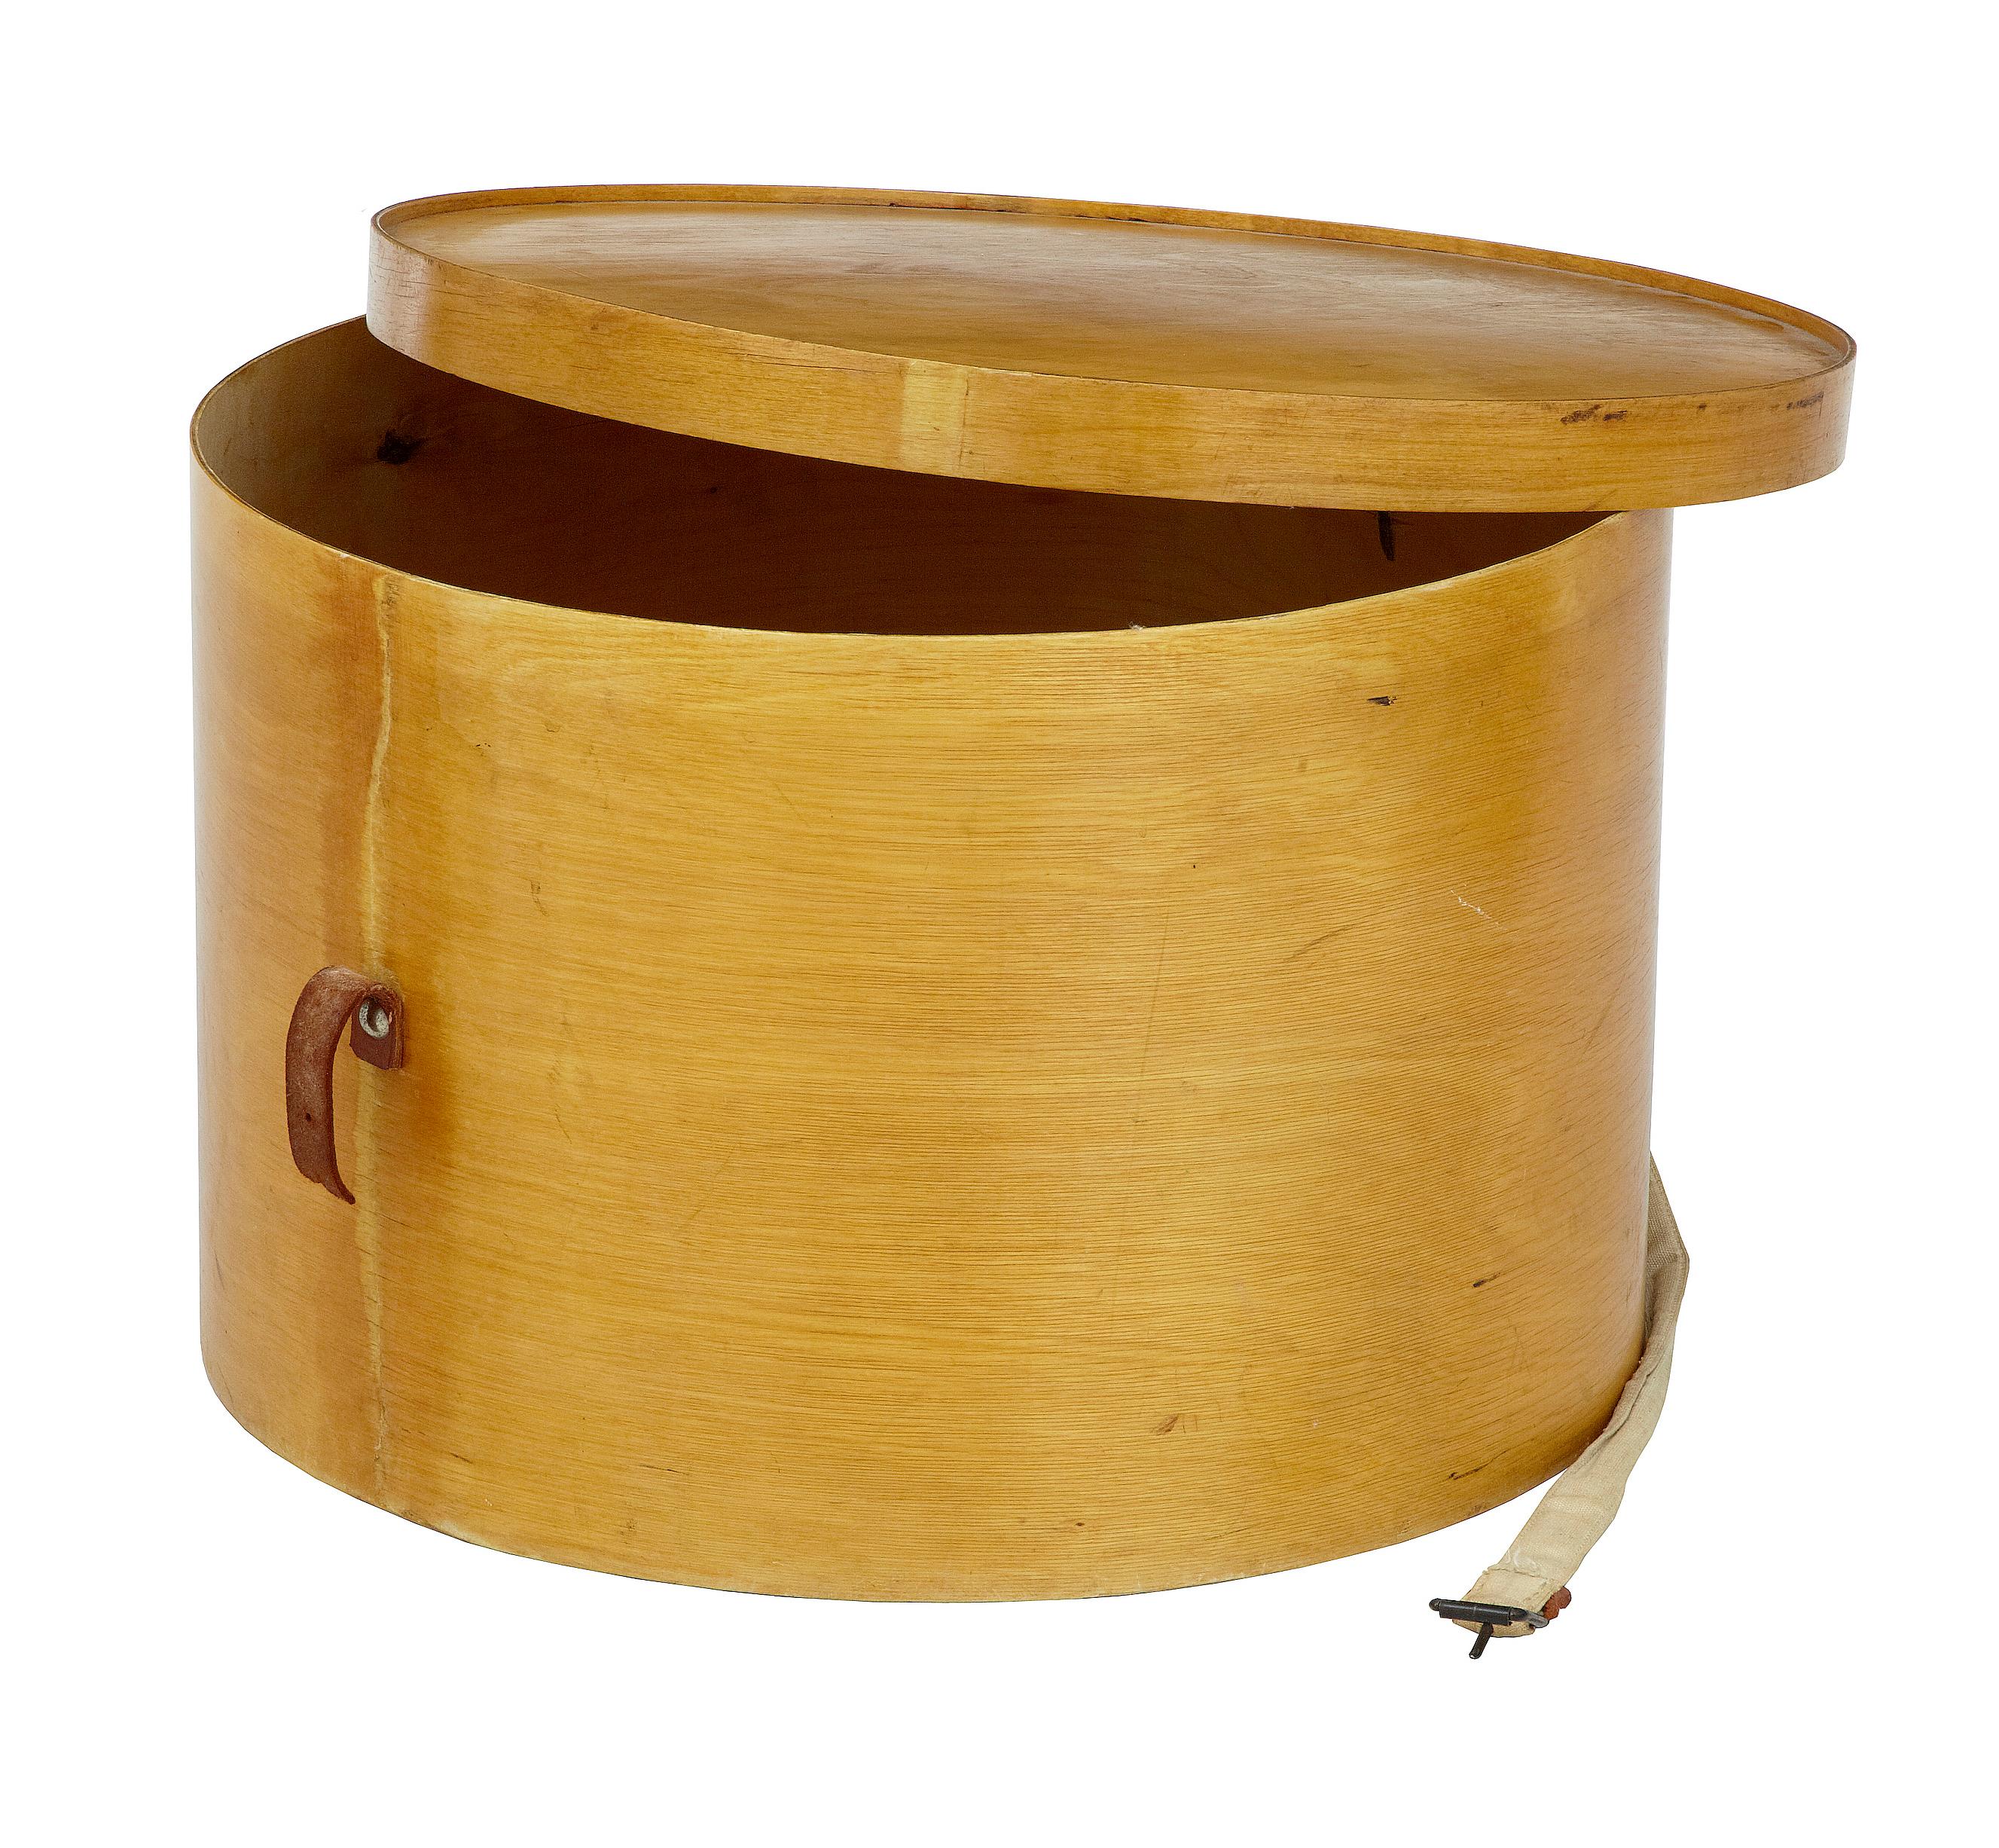 Boîte à chapeaux en bois courbé Luterma reval en bouleau des années 1920.

Boîte en contreplaqué de bonne qualité, fabriquée par les célèbres fabricants Luterma. Estampillé à l'intérieur du couvercle et sur la base. En bon état général,

La